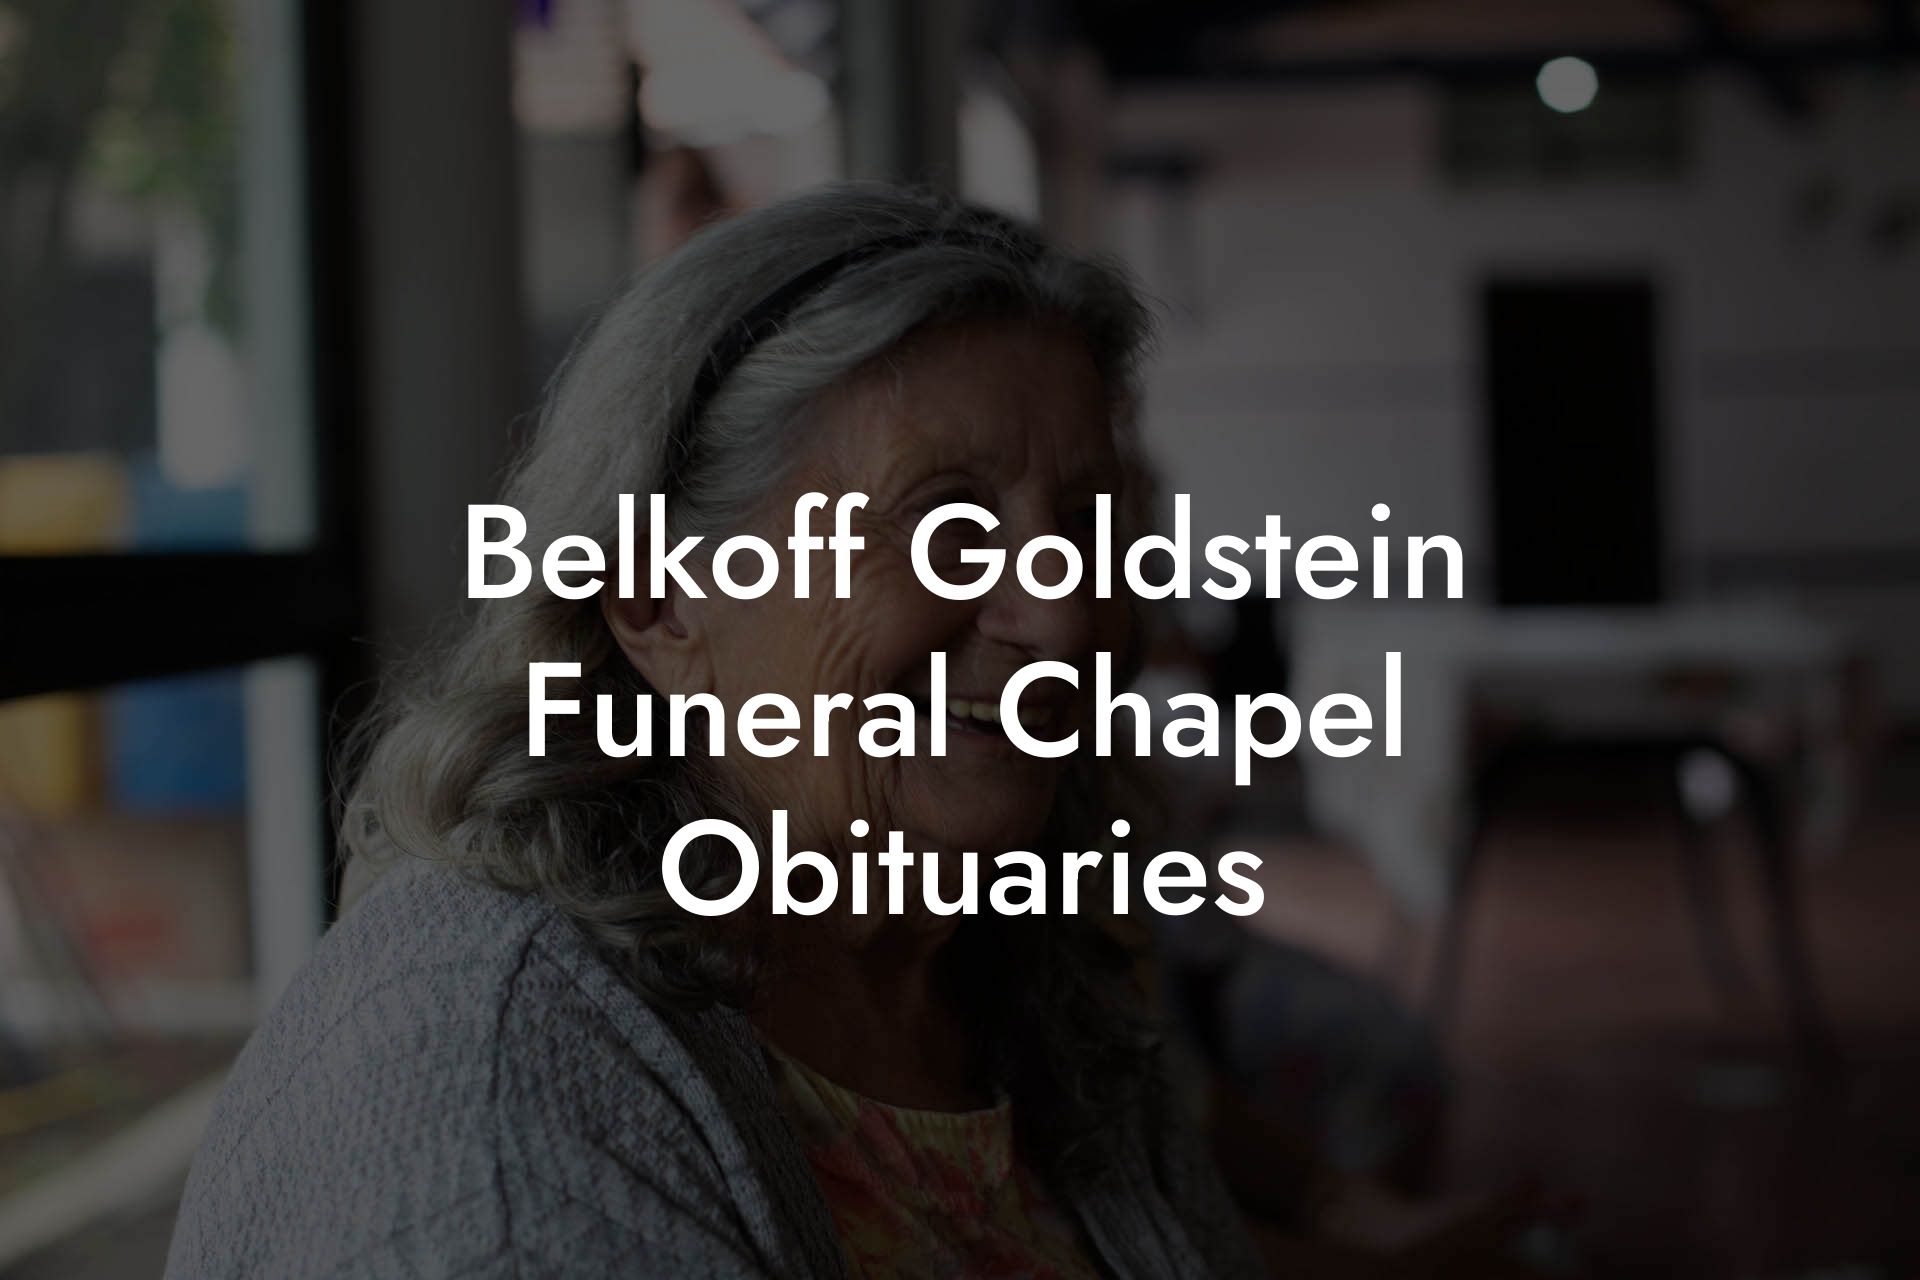 Belkoff Goldstein Funeral Chapel Obituaries